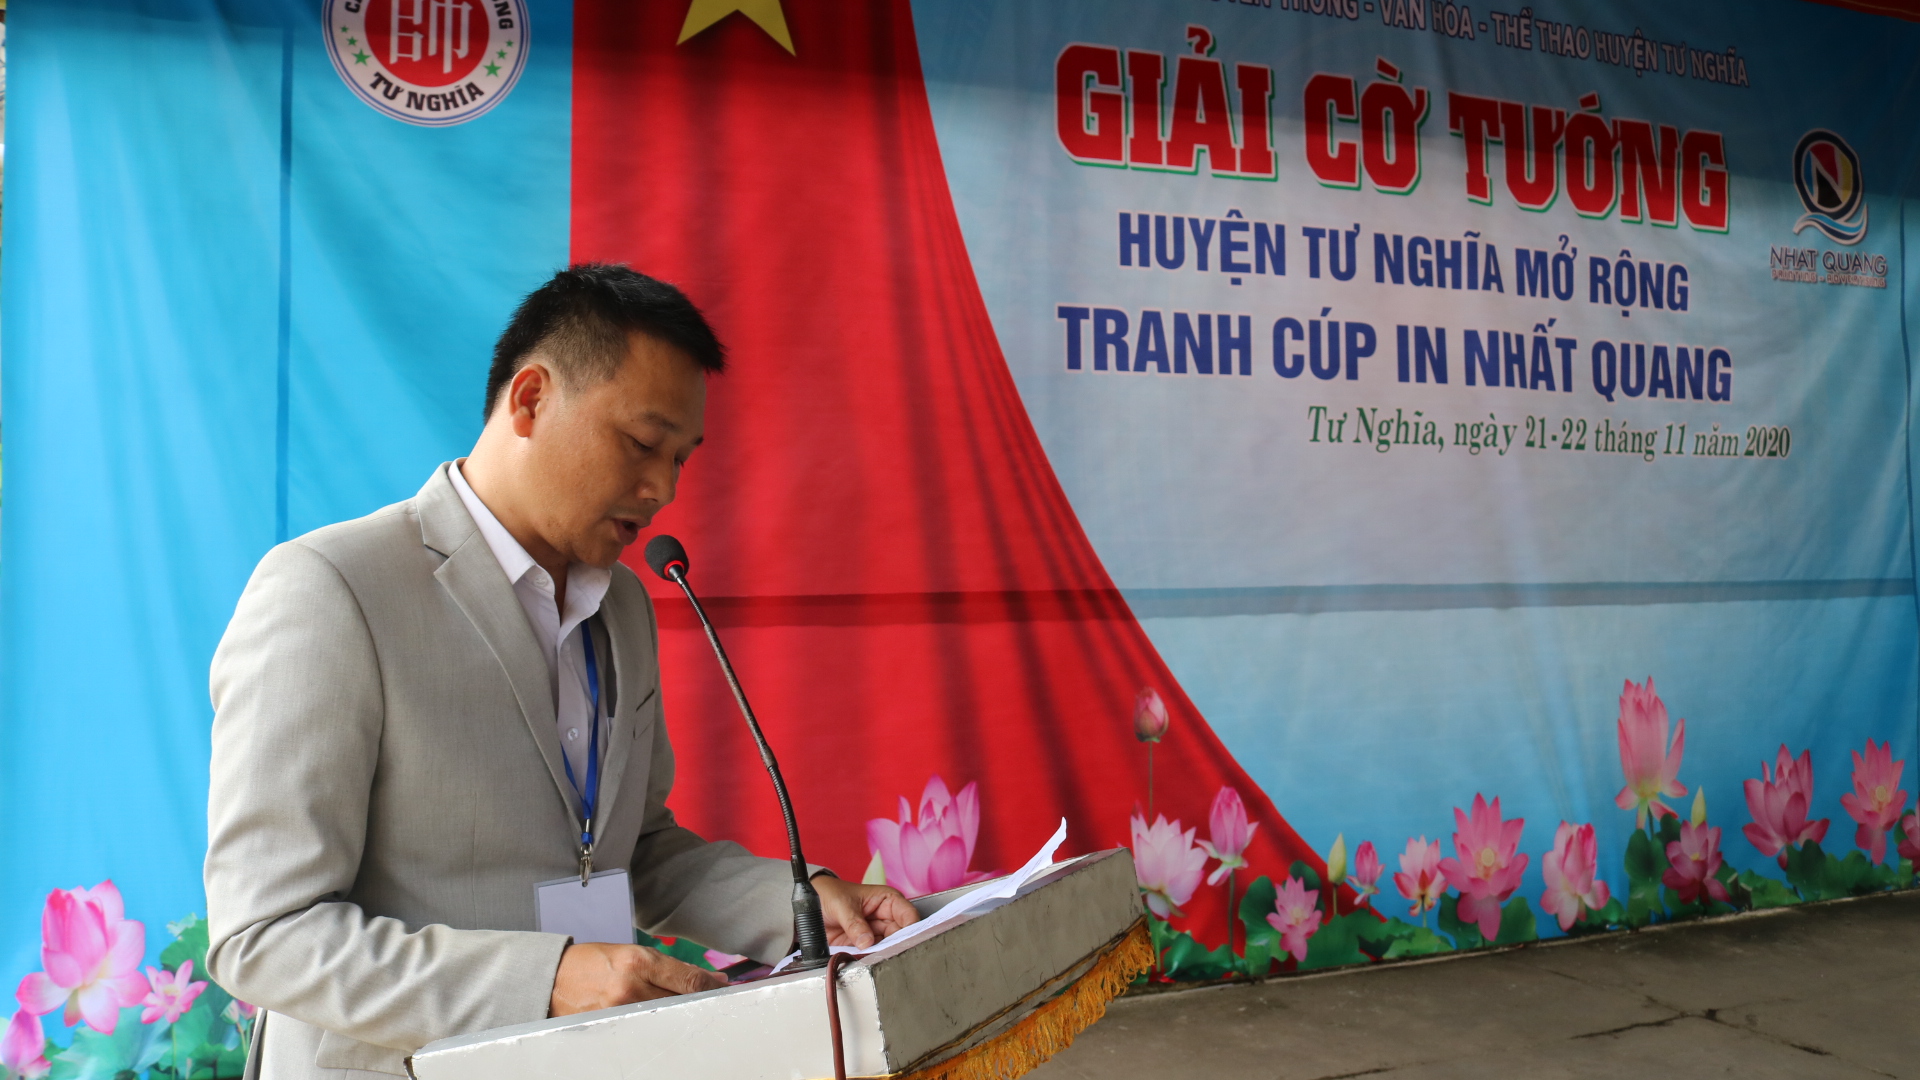 Khai mạc giải cờ tướng huyện Tư Nghĩa mở rộng tranh cúp in Nhất Quang năm 2020